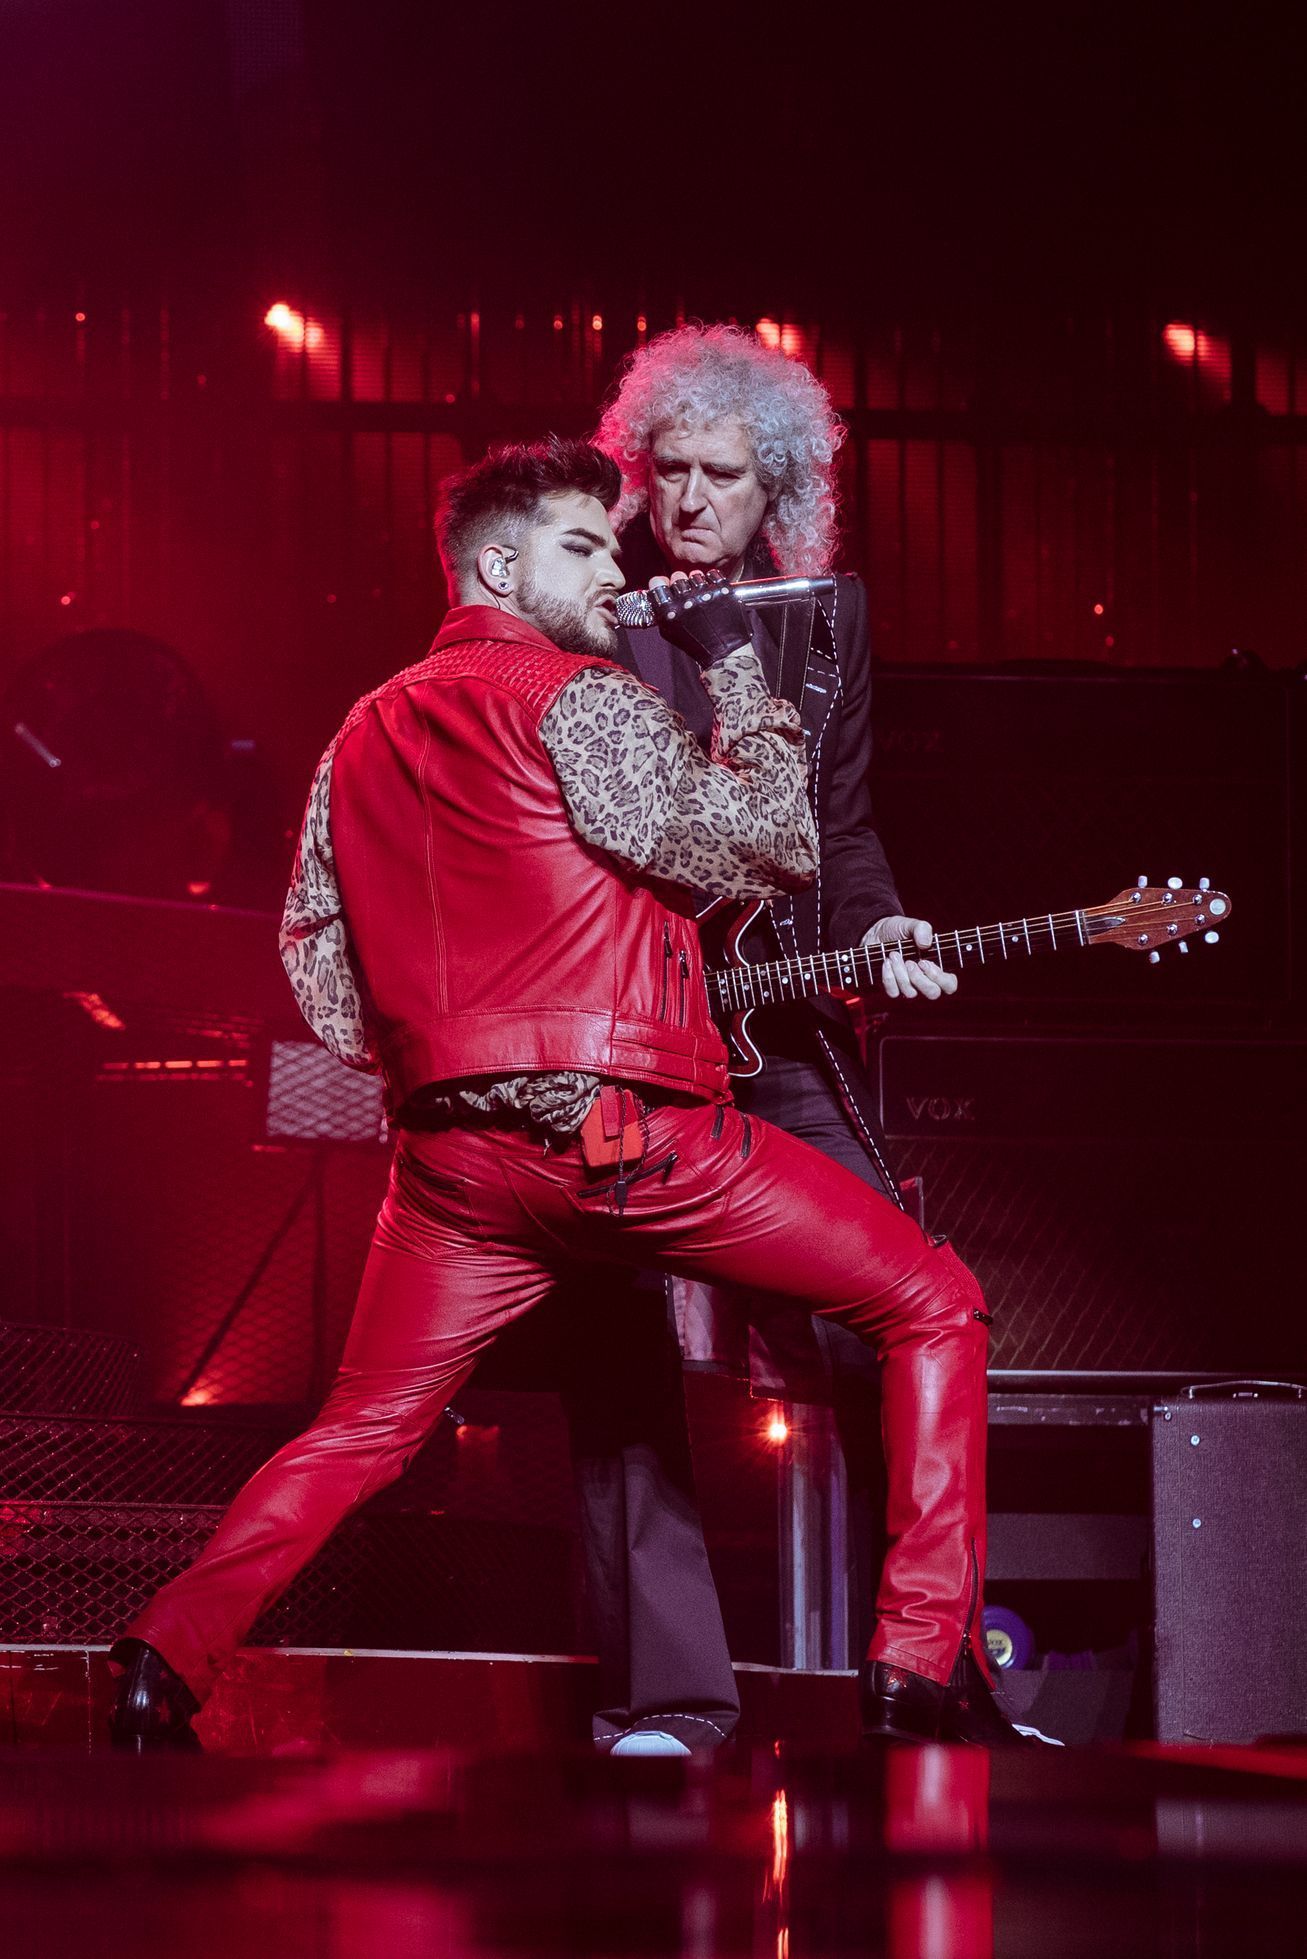 Queen a Adam Lambert - Praha 2017